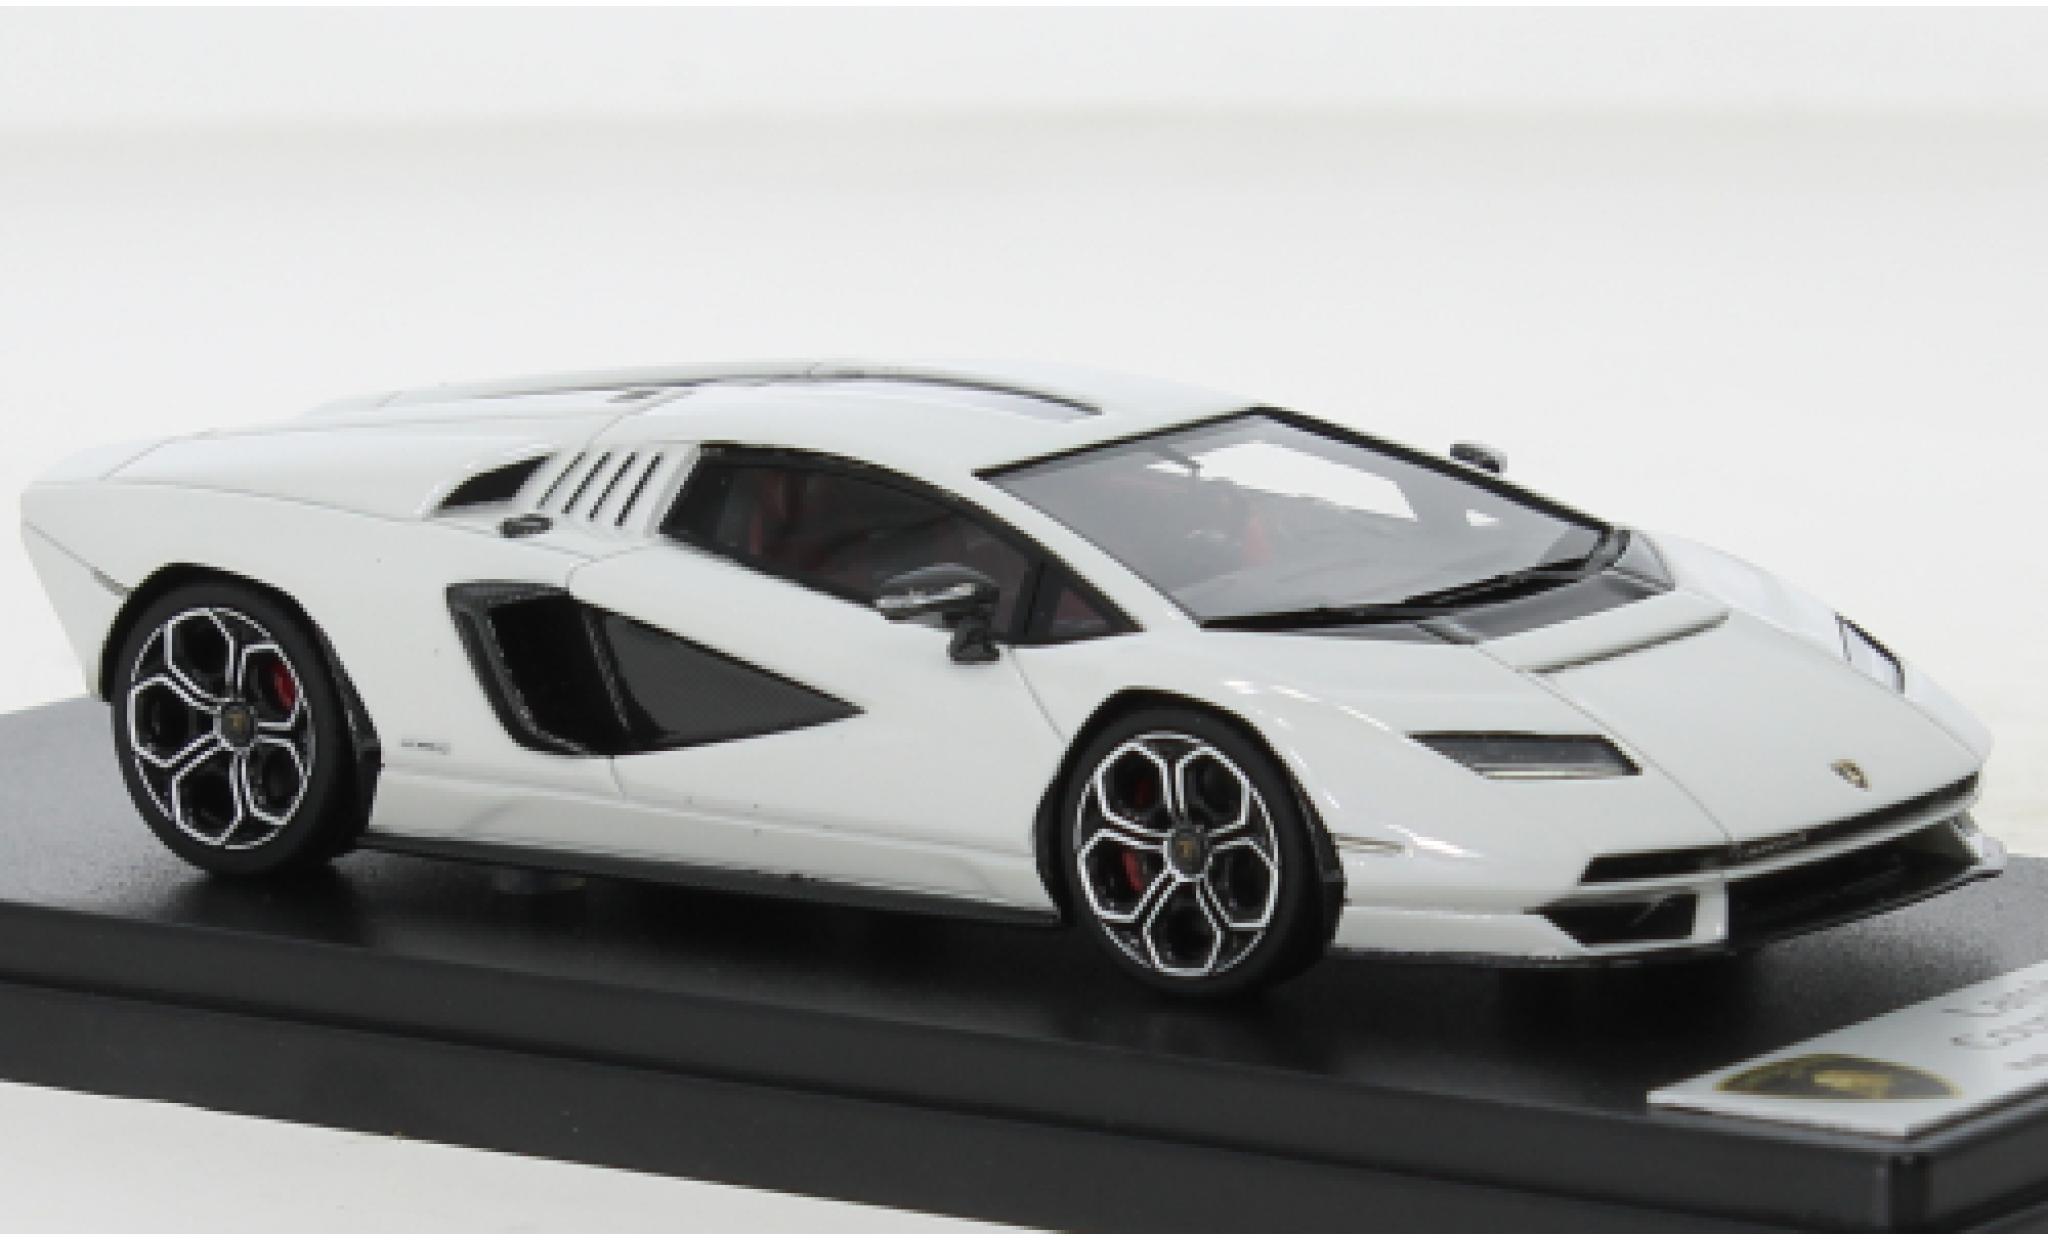 Voiture Lamborghini Countach LPI-800 blanche 1/18